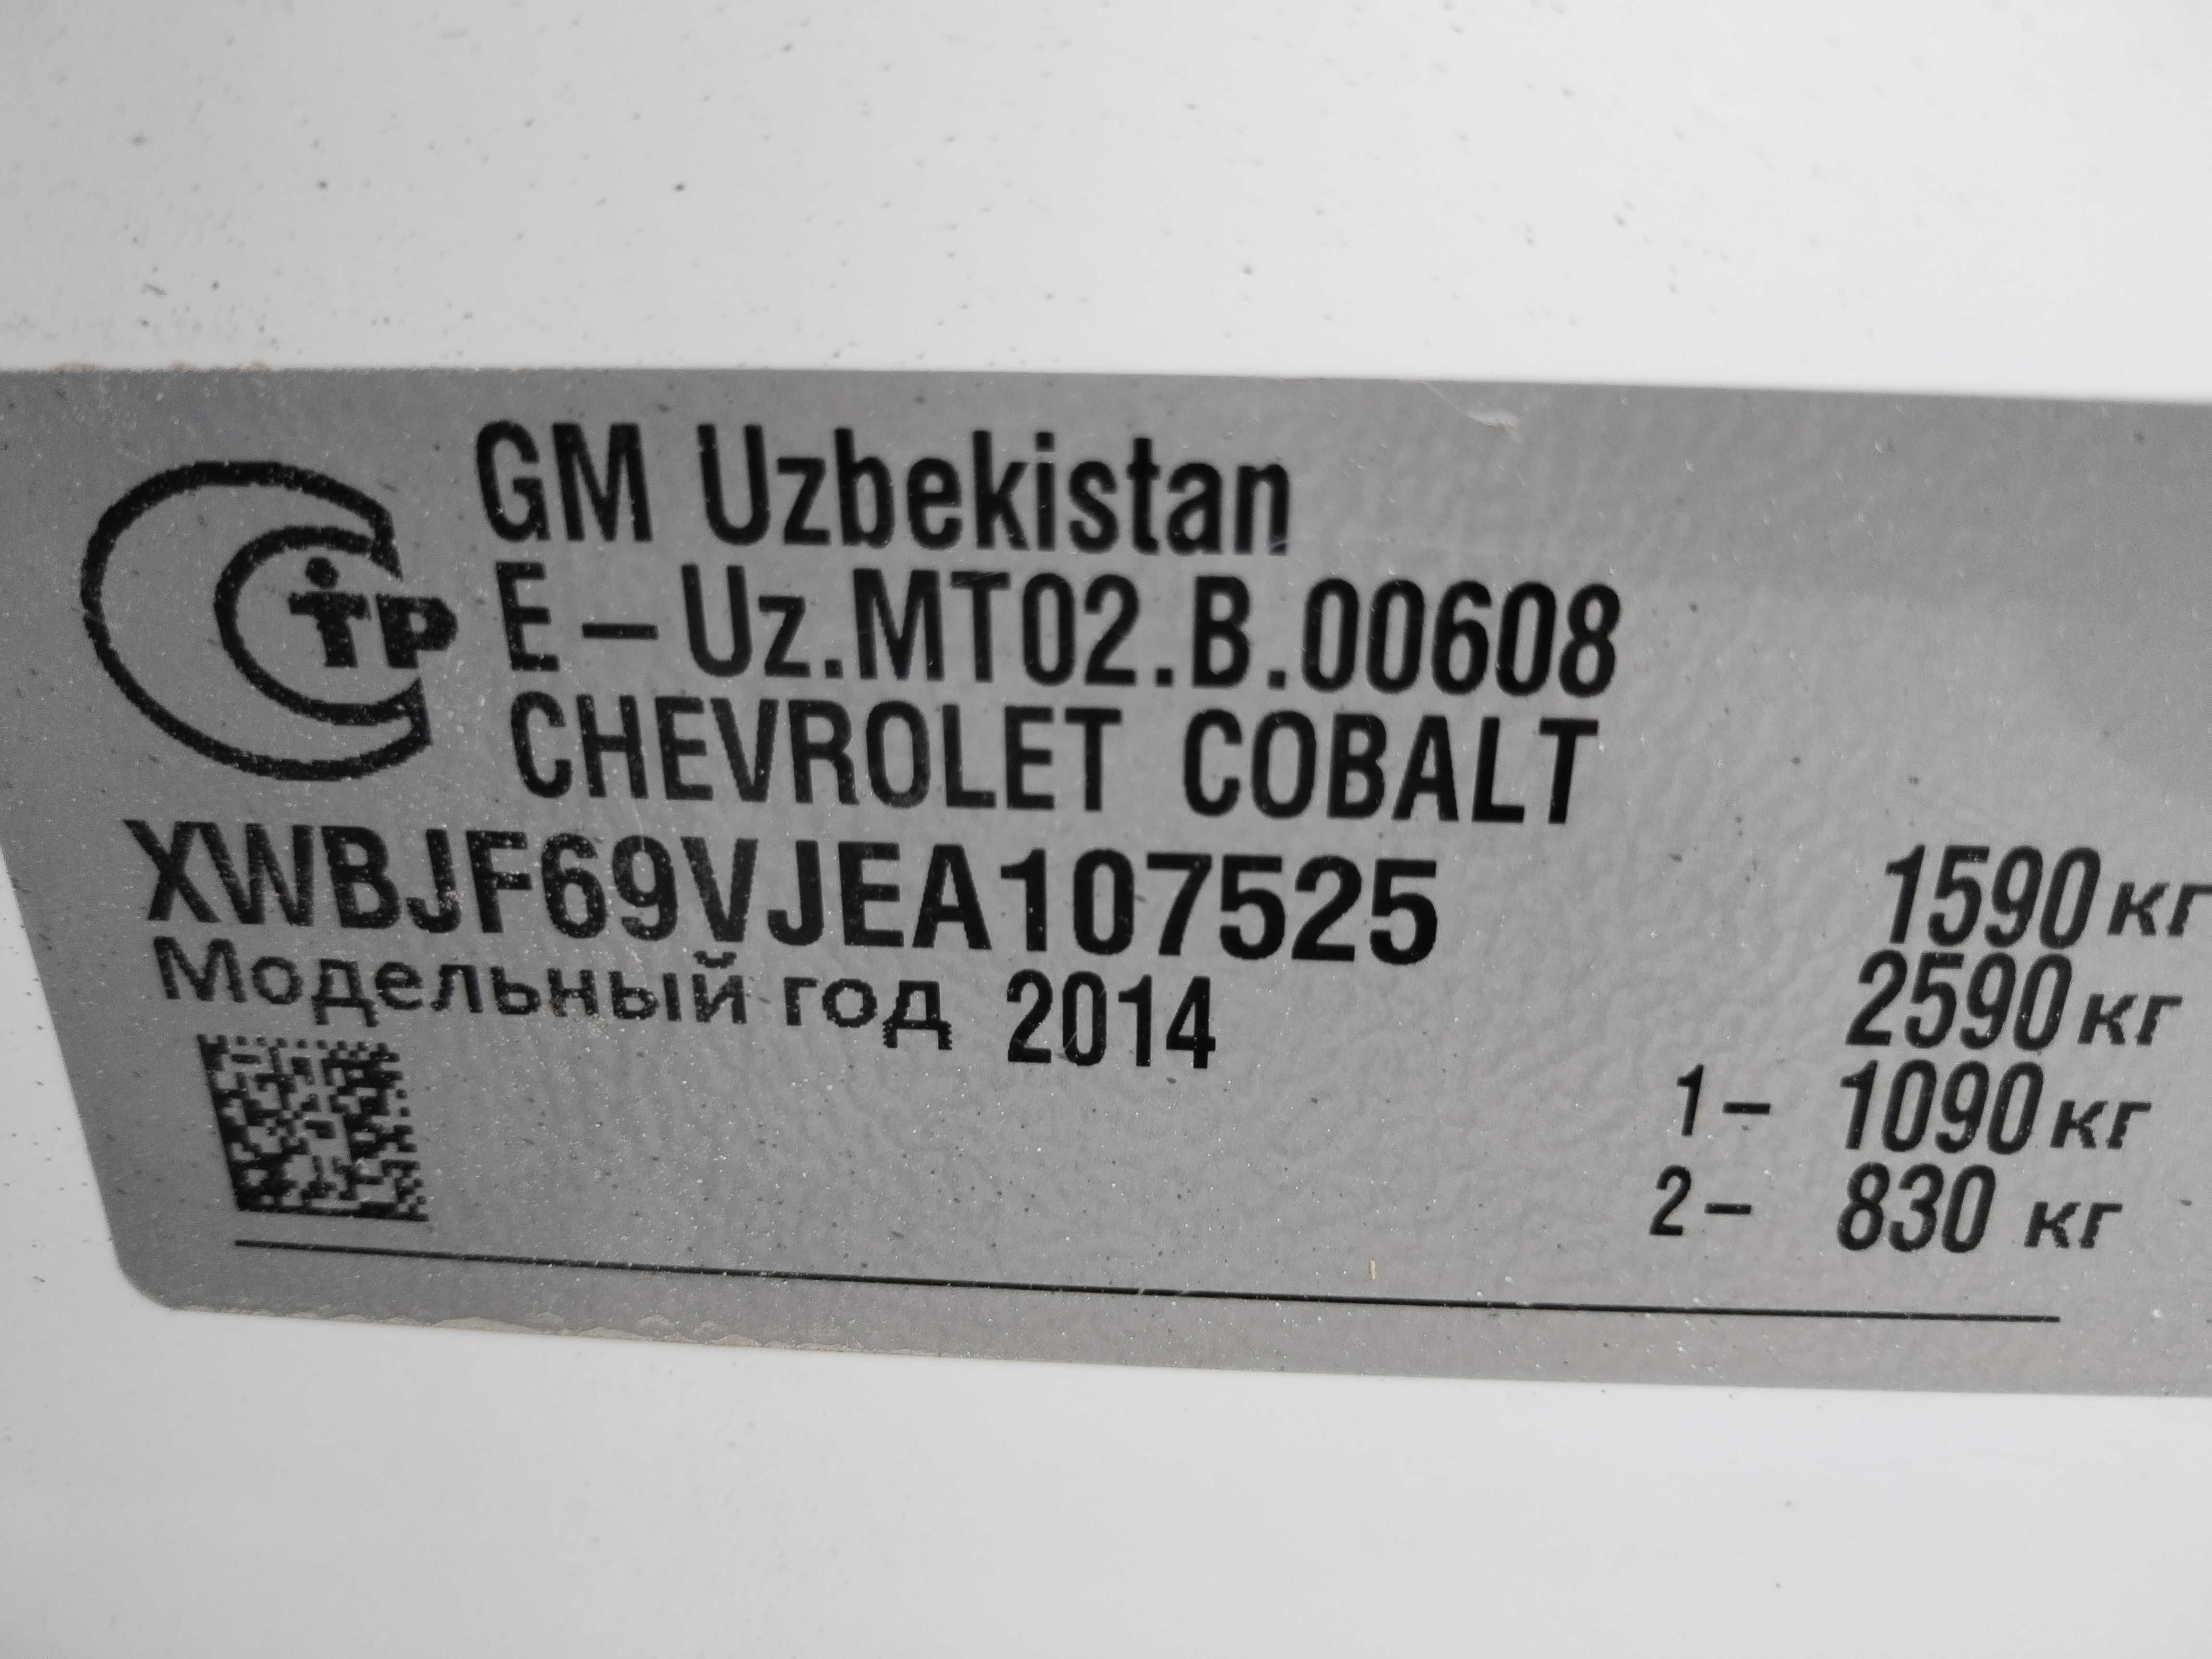 Kobalt LT 2014 METAN GAZ idealni SASTAYANI